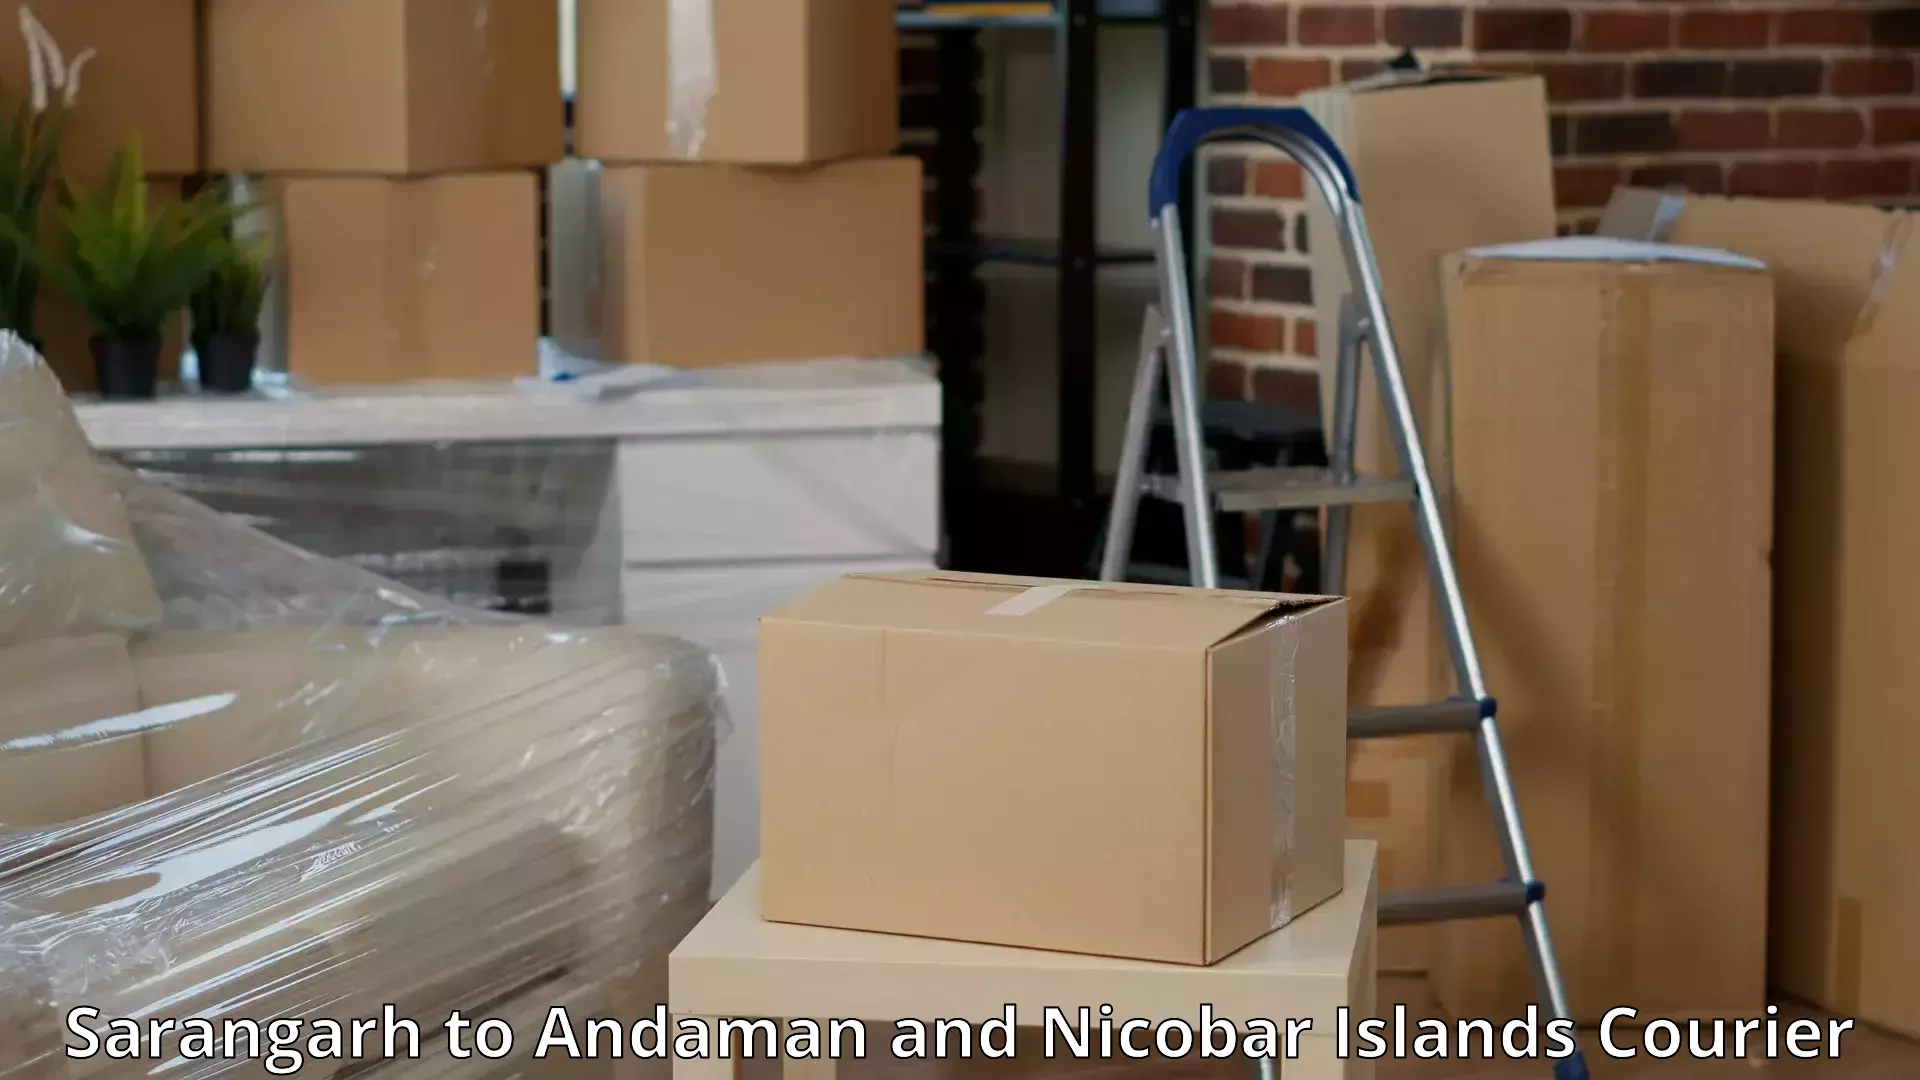 Furniture moving assistance Sarangarh to Andaman and Nicobar Islands